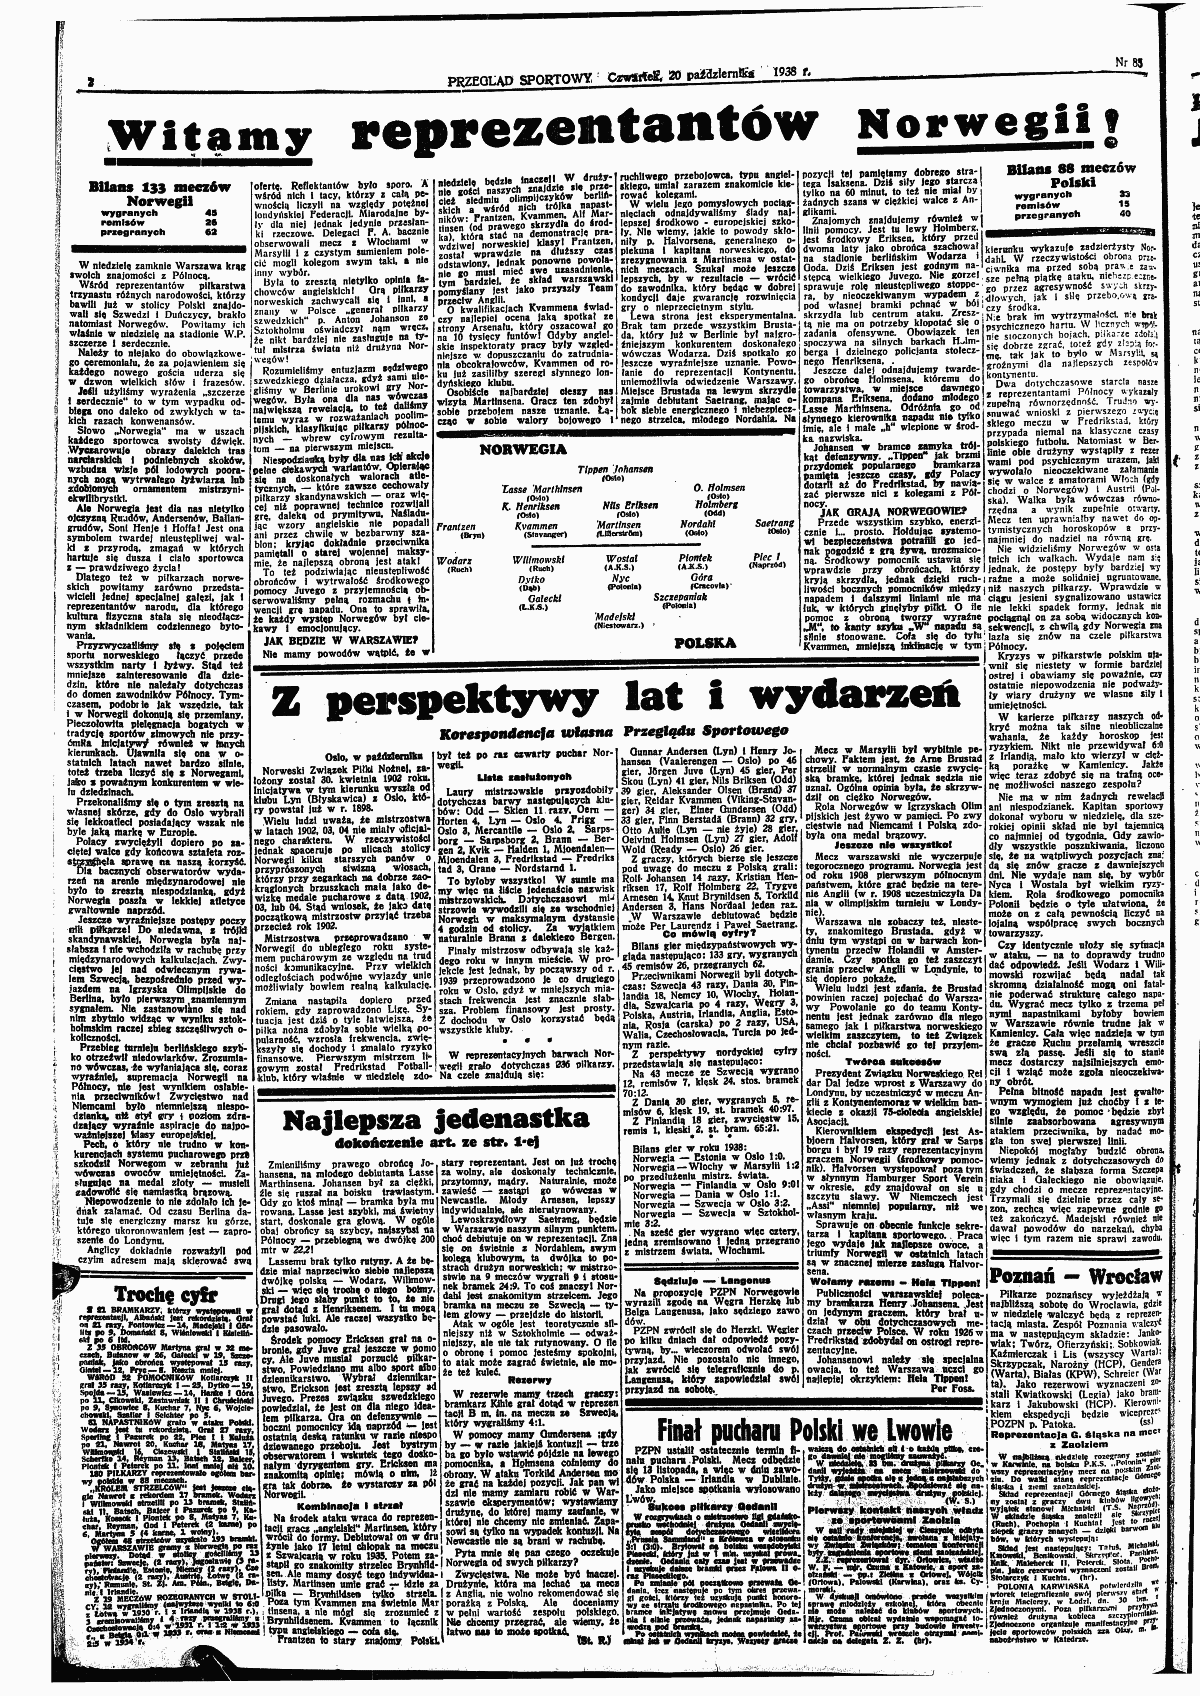 Przeglad Sportowy nr 85 z 20.10.1938